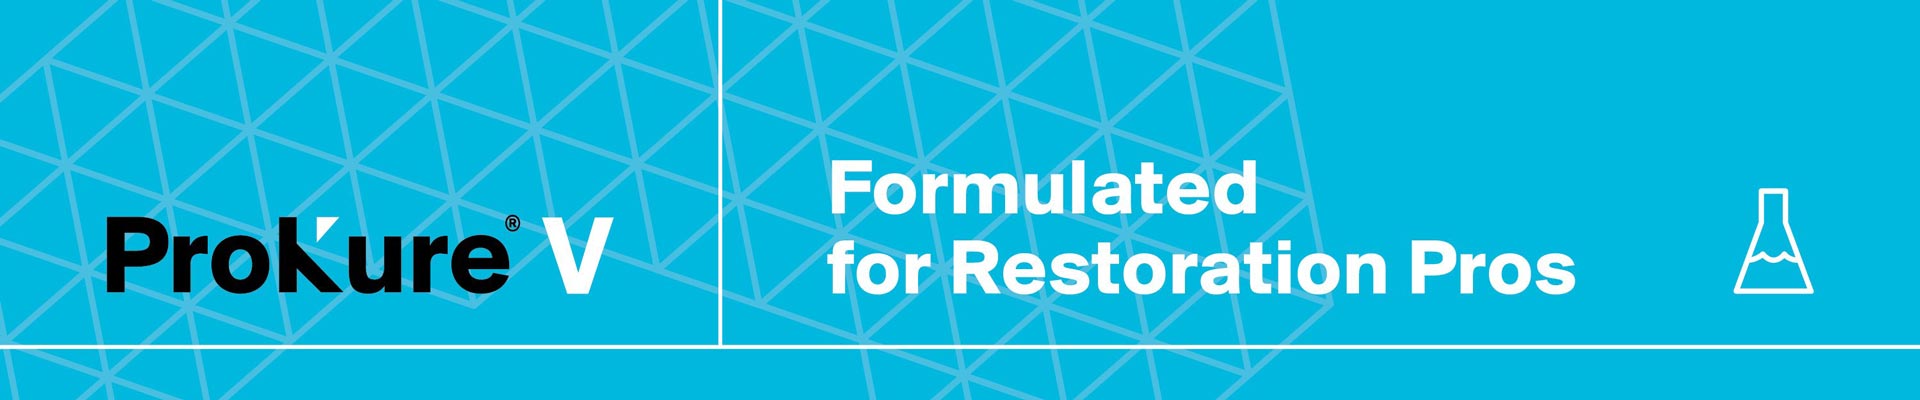 ProKure V Formulated for Restoration Pros